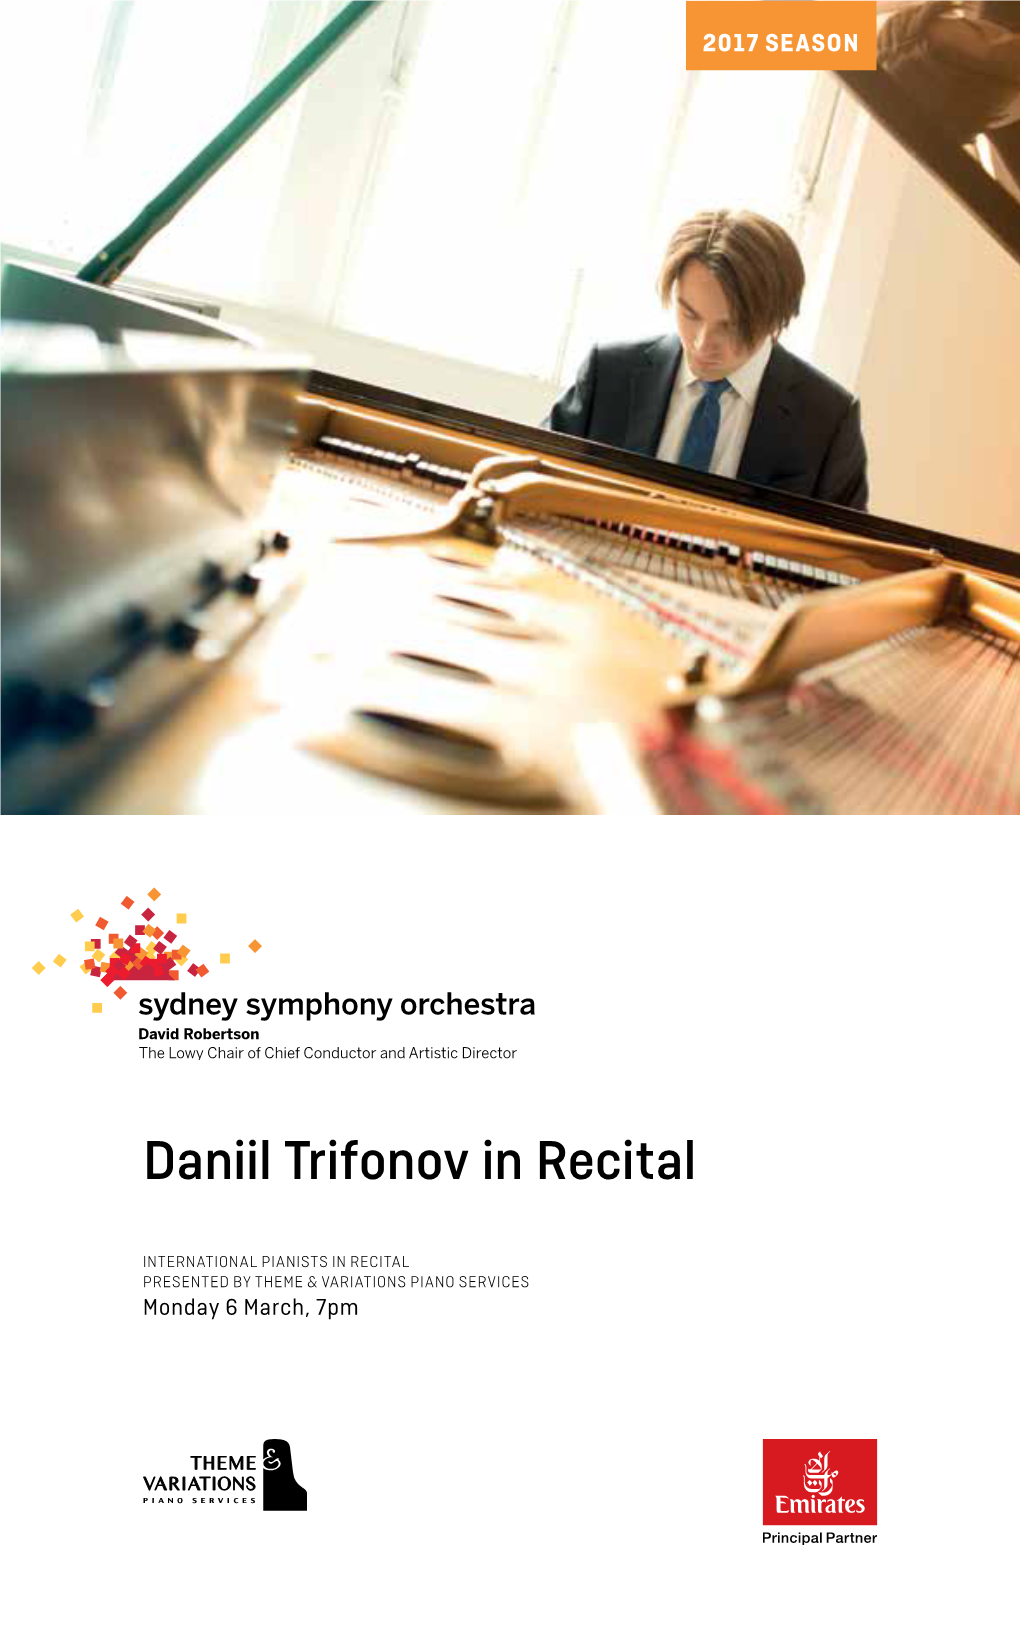 Daniil Trifonov in Recital